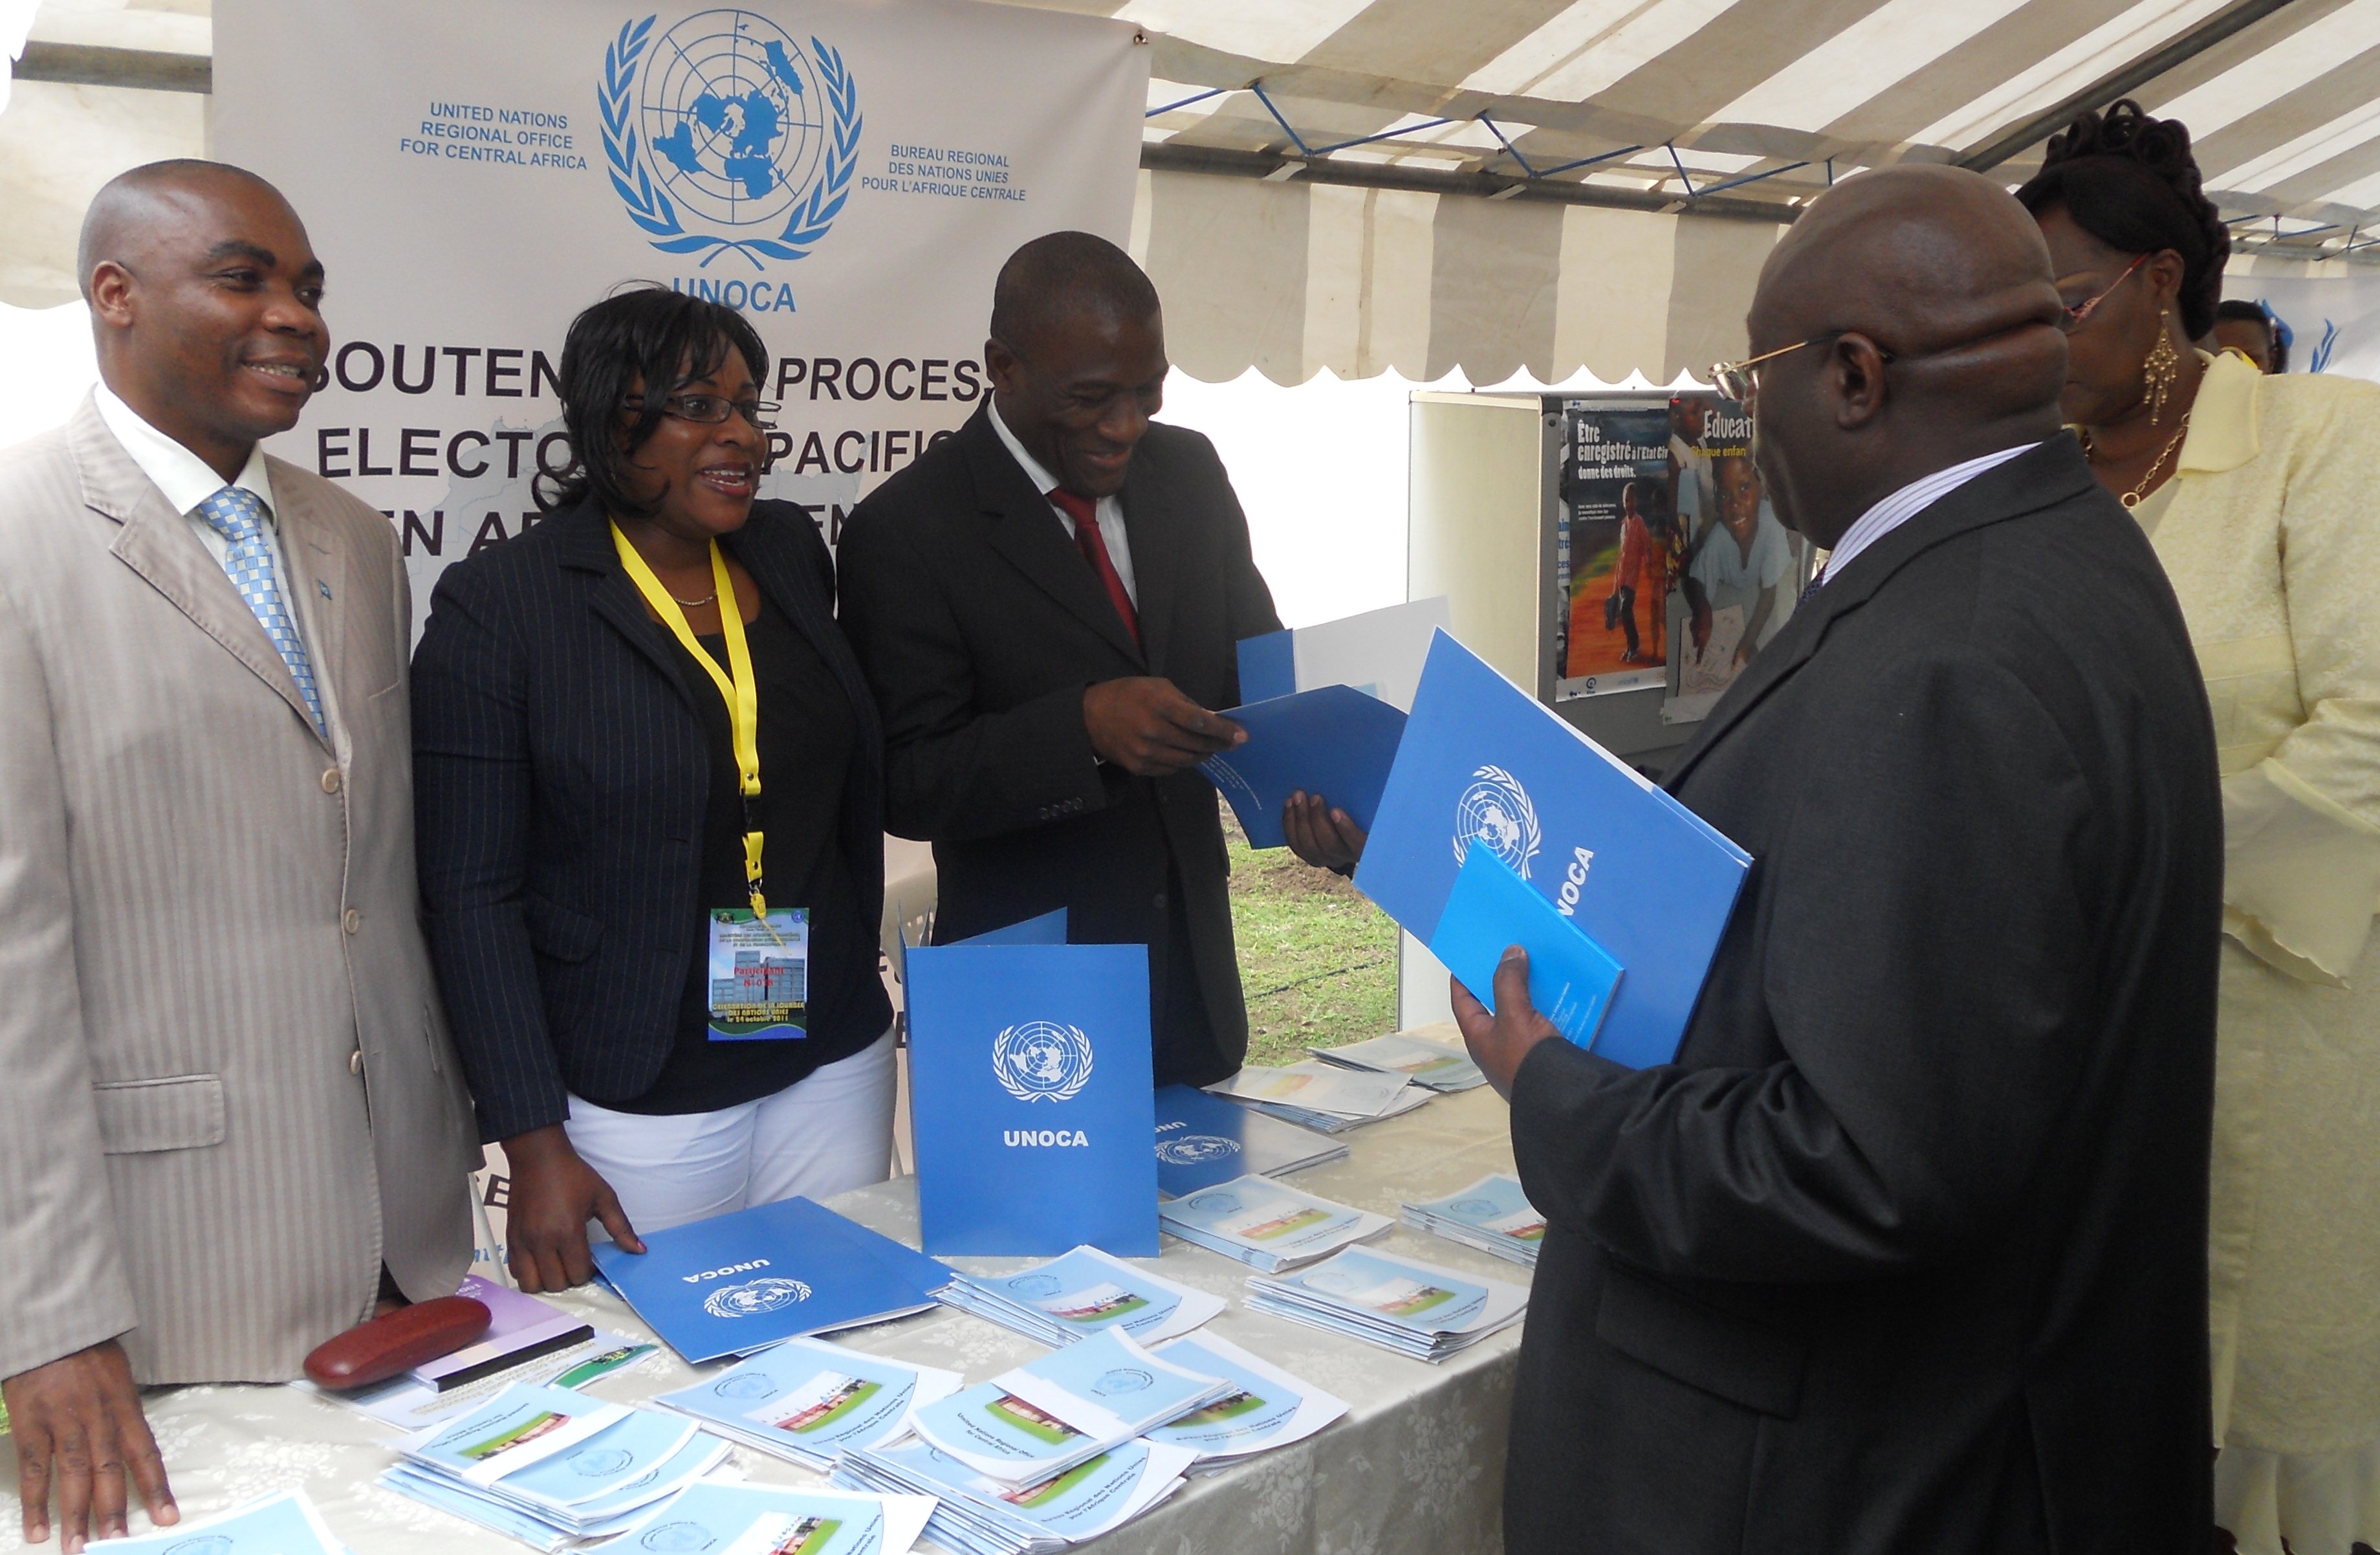 24 octobre 2011, Libreville, Gabon - Participation a la Journee internationale des Nations Unies